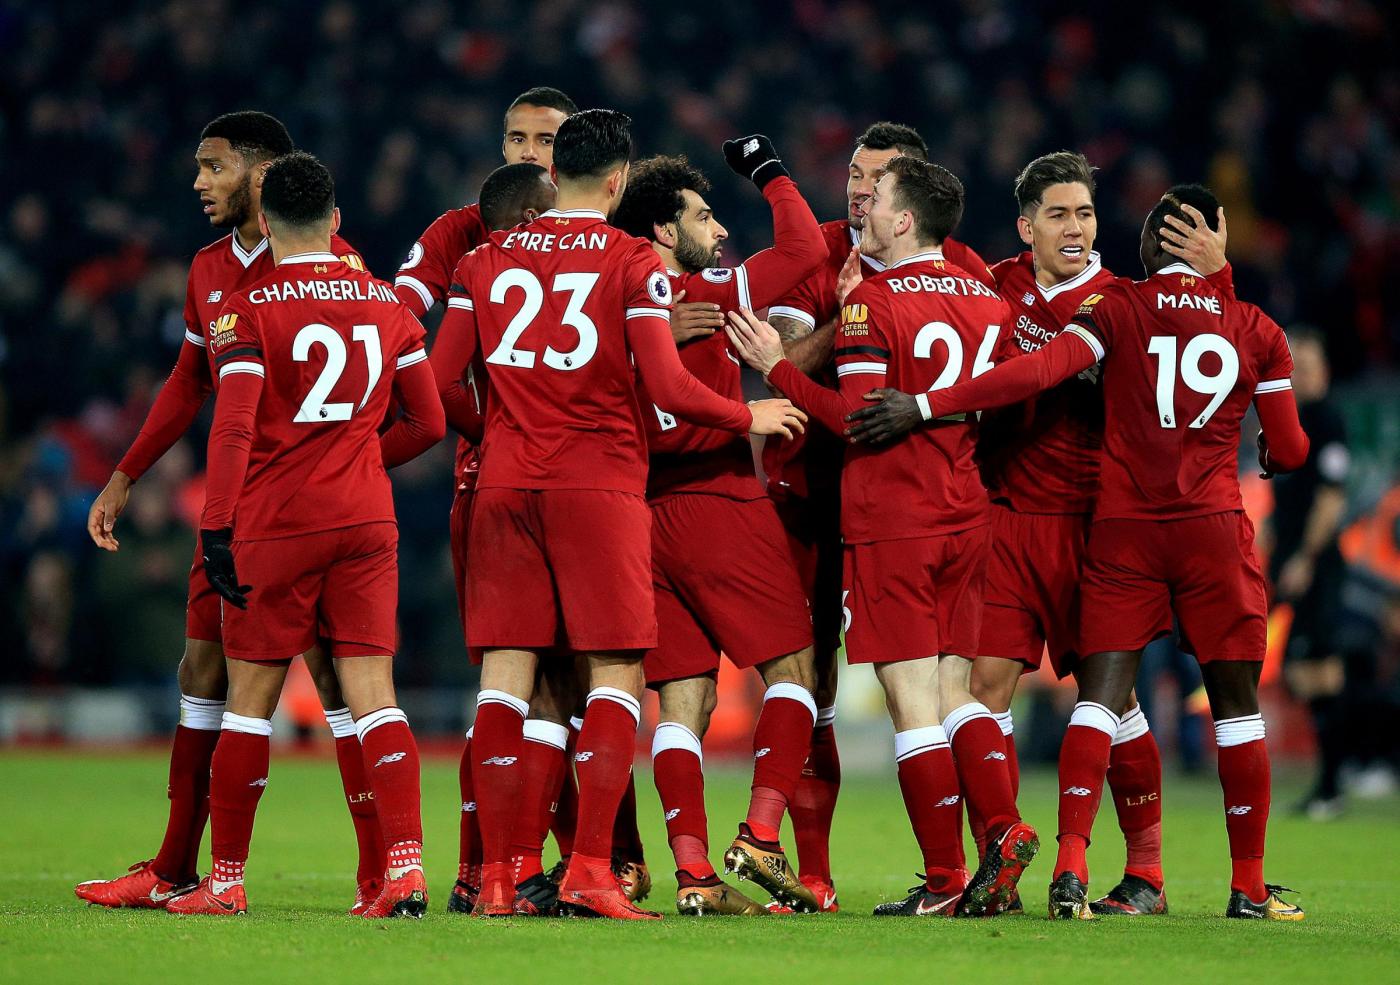 Liverpool-Roma martedì 24 aprile, analisi e pronostico Champions League semifinale andata